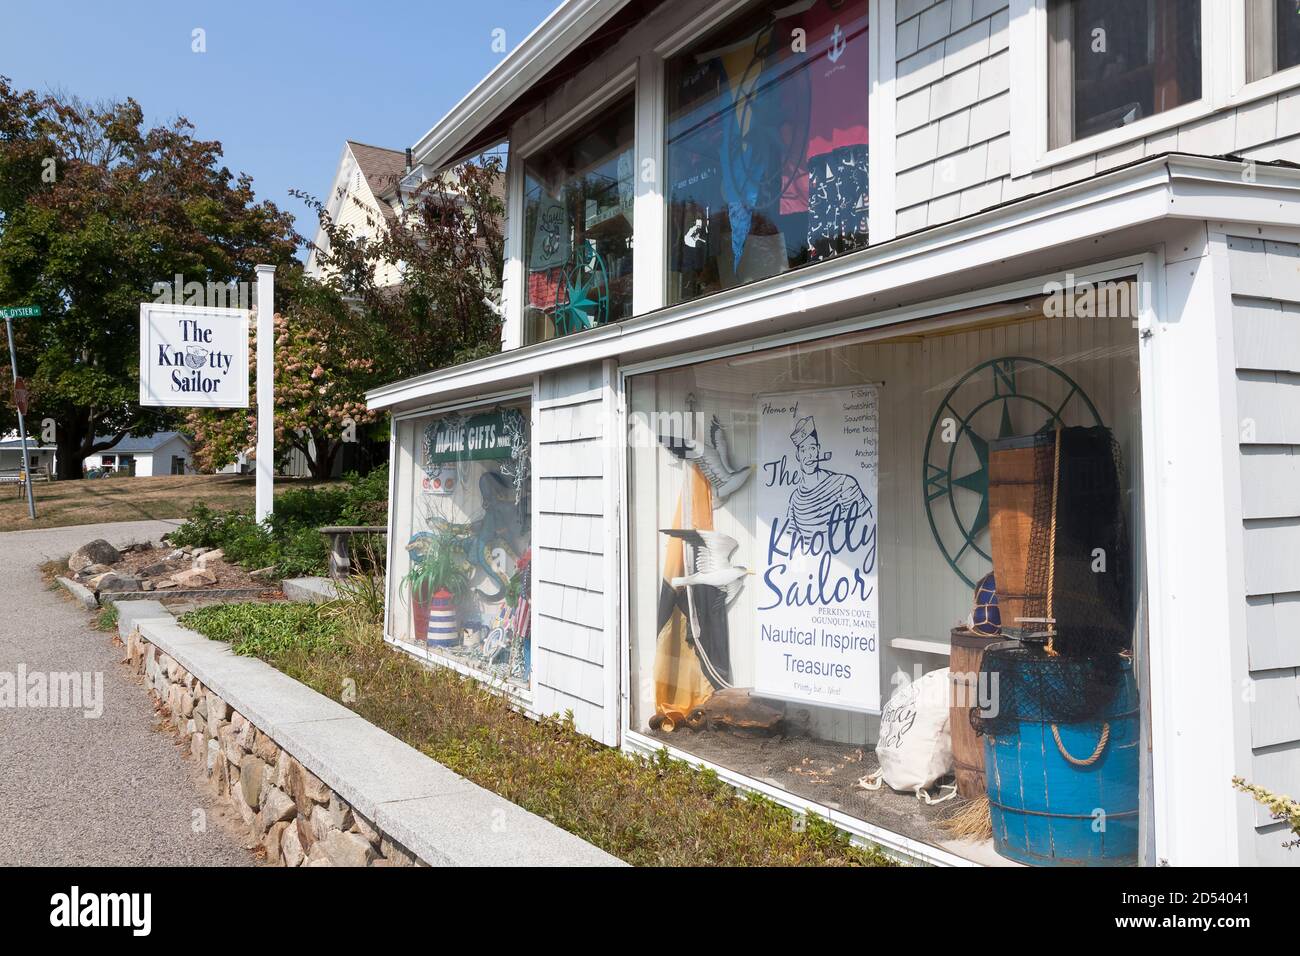 Der Knoty Sailor Gift Shop in Ogunquit, Maine, der nautische Artikel verkauft. Stockfoto